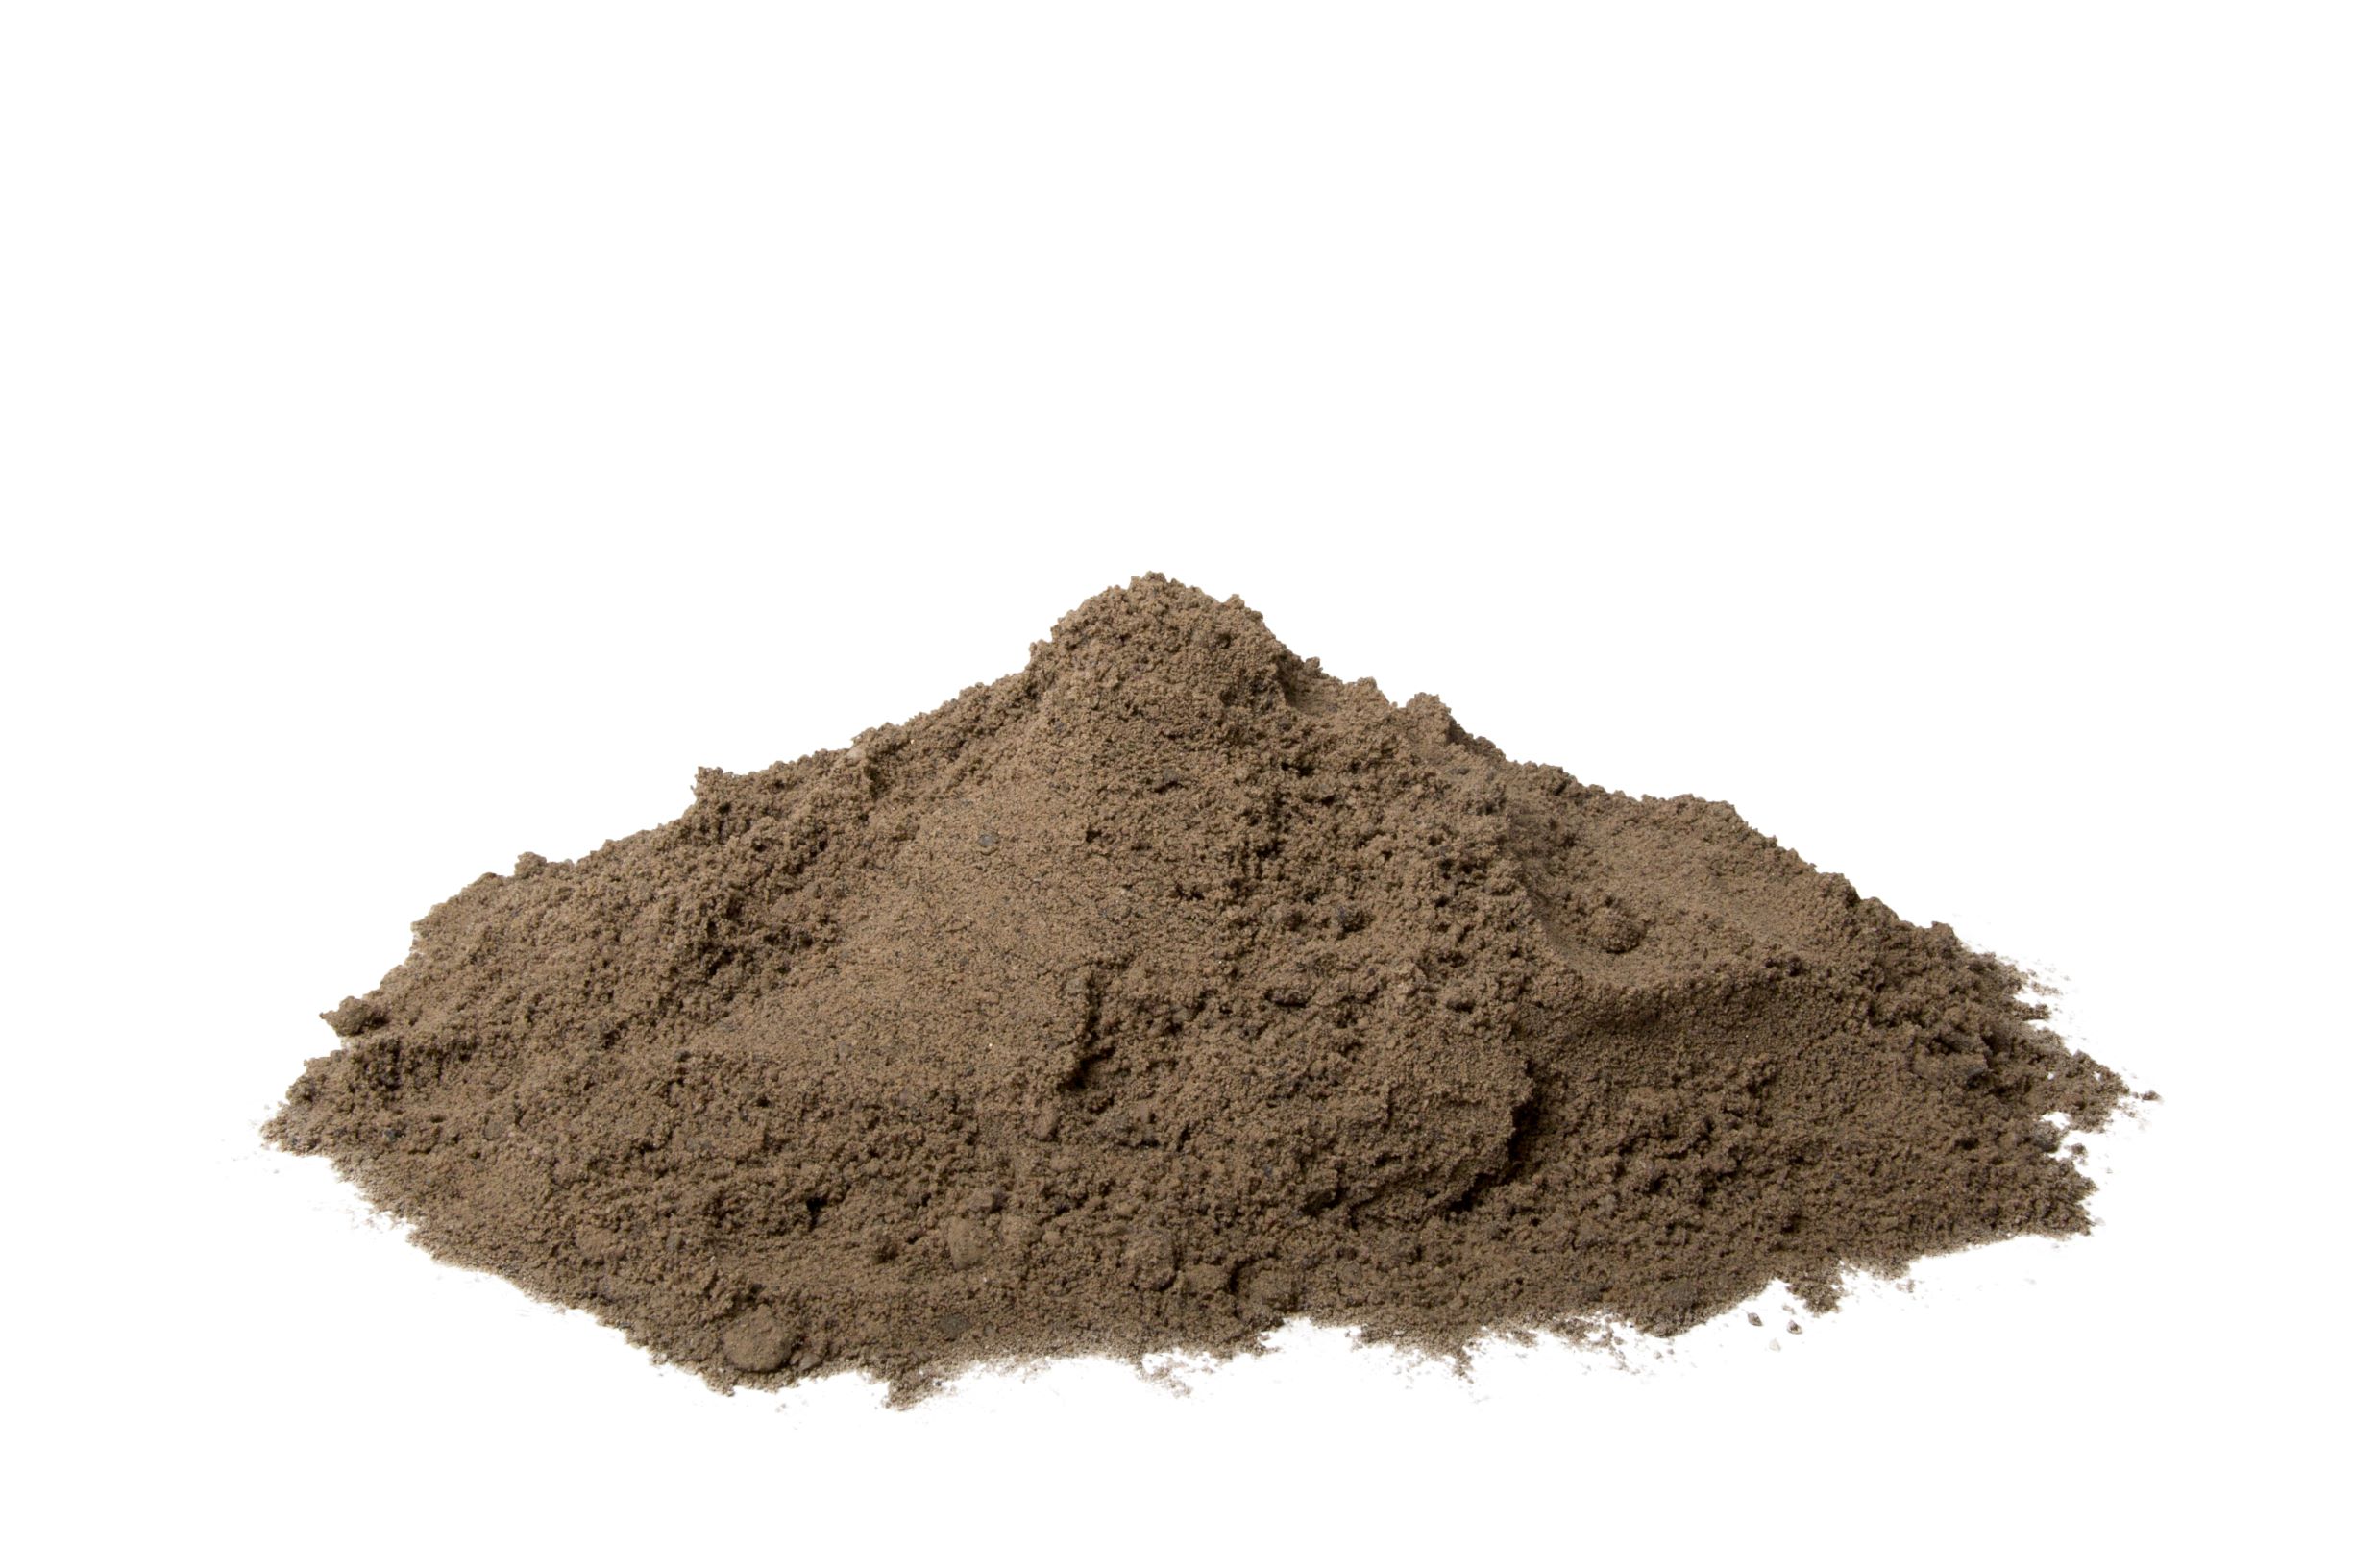 ¿Qué tipo de material es la arena?